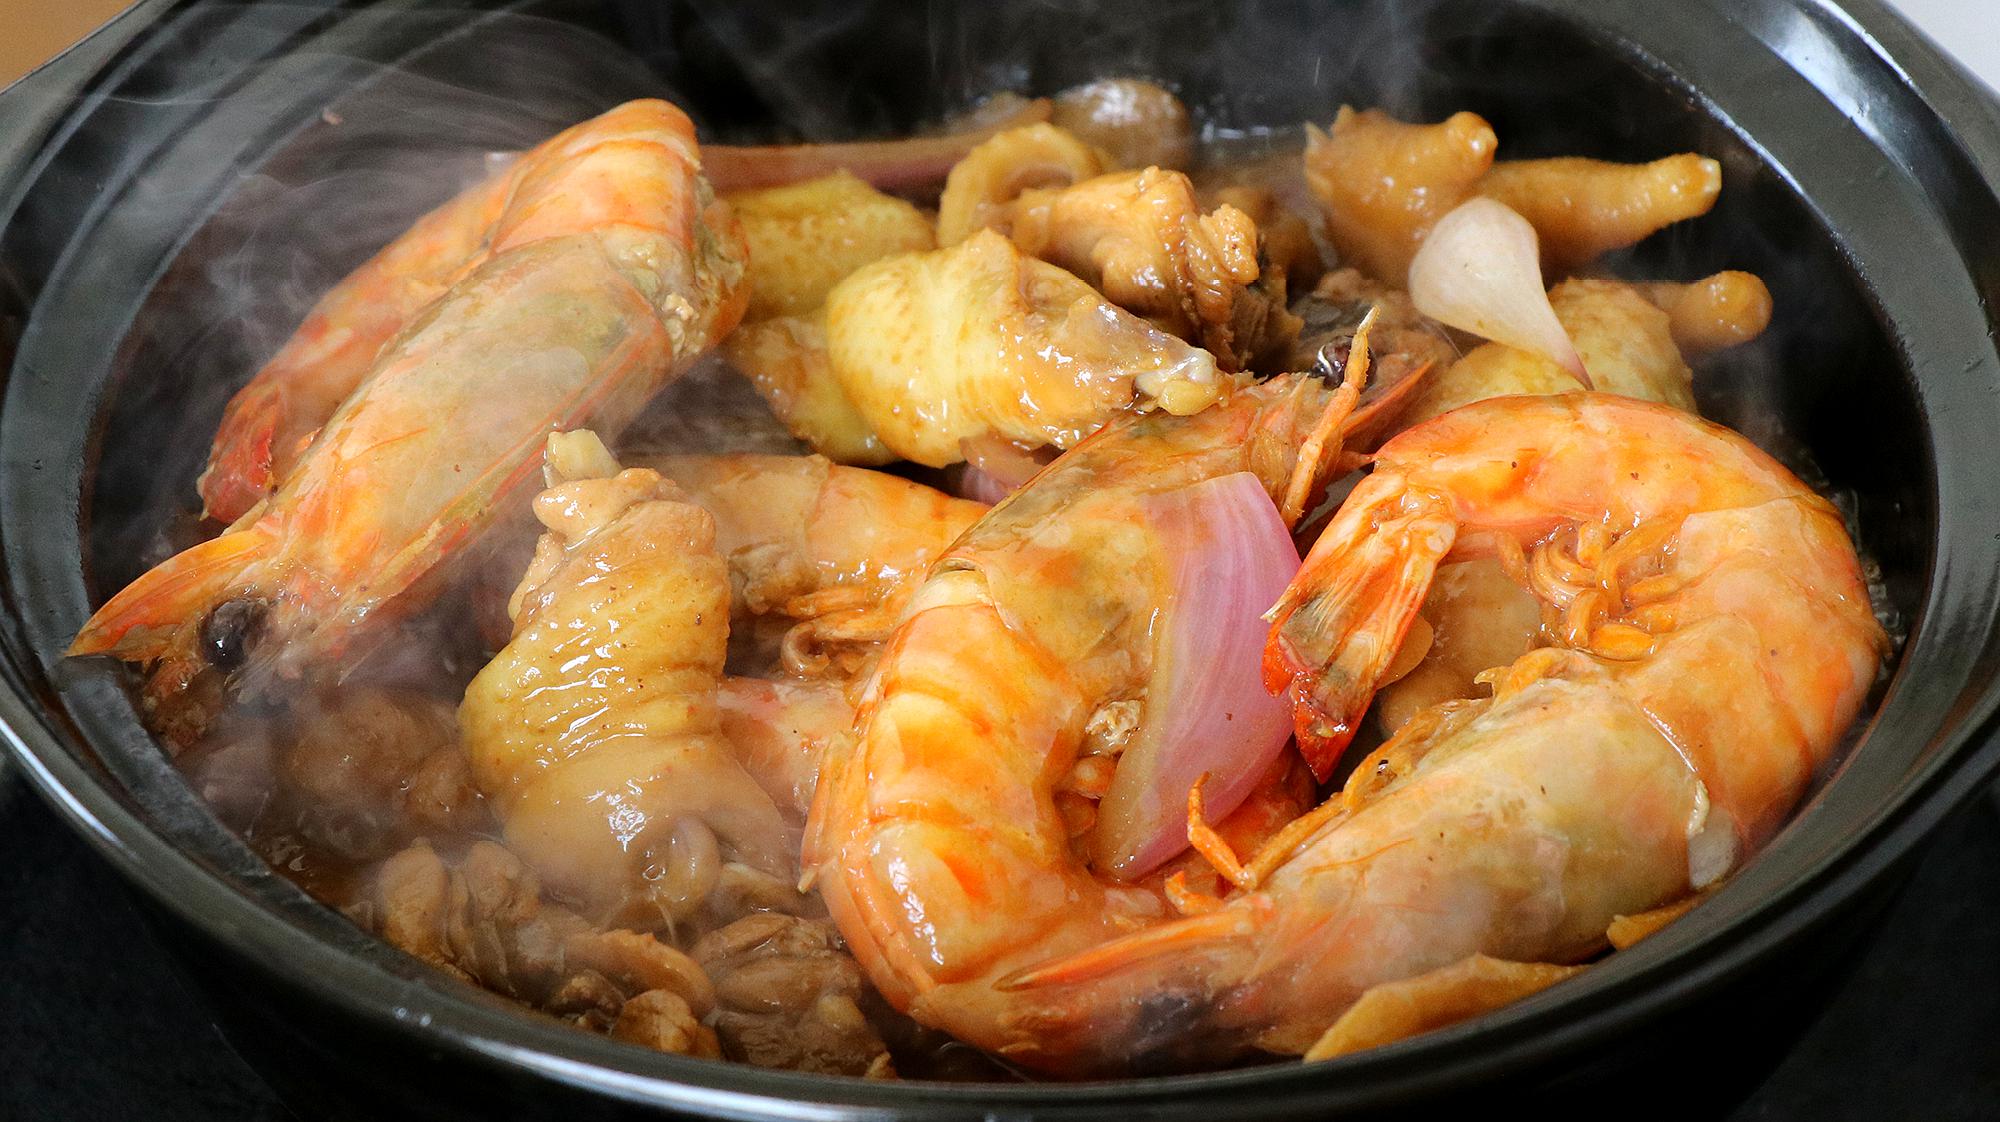 广东鲜虾鸡肉煲,大虾的鲜味碰撞鸡肉的香味,上桌连汤汁都不剩